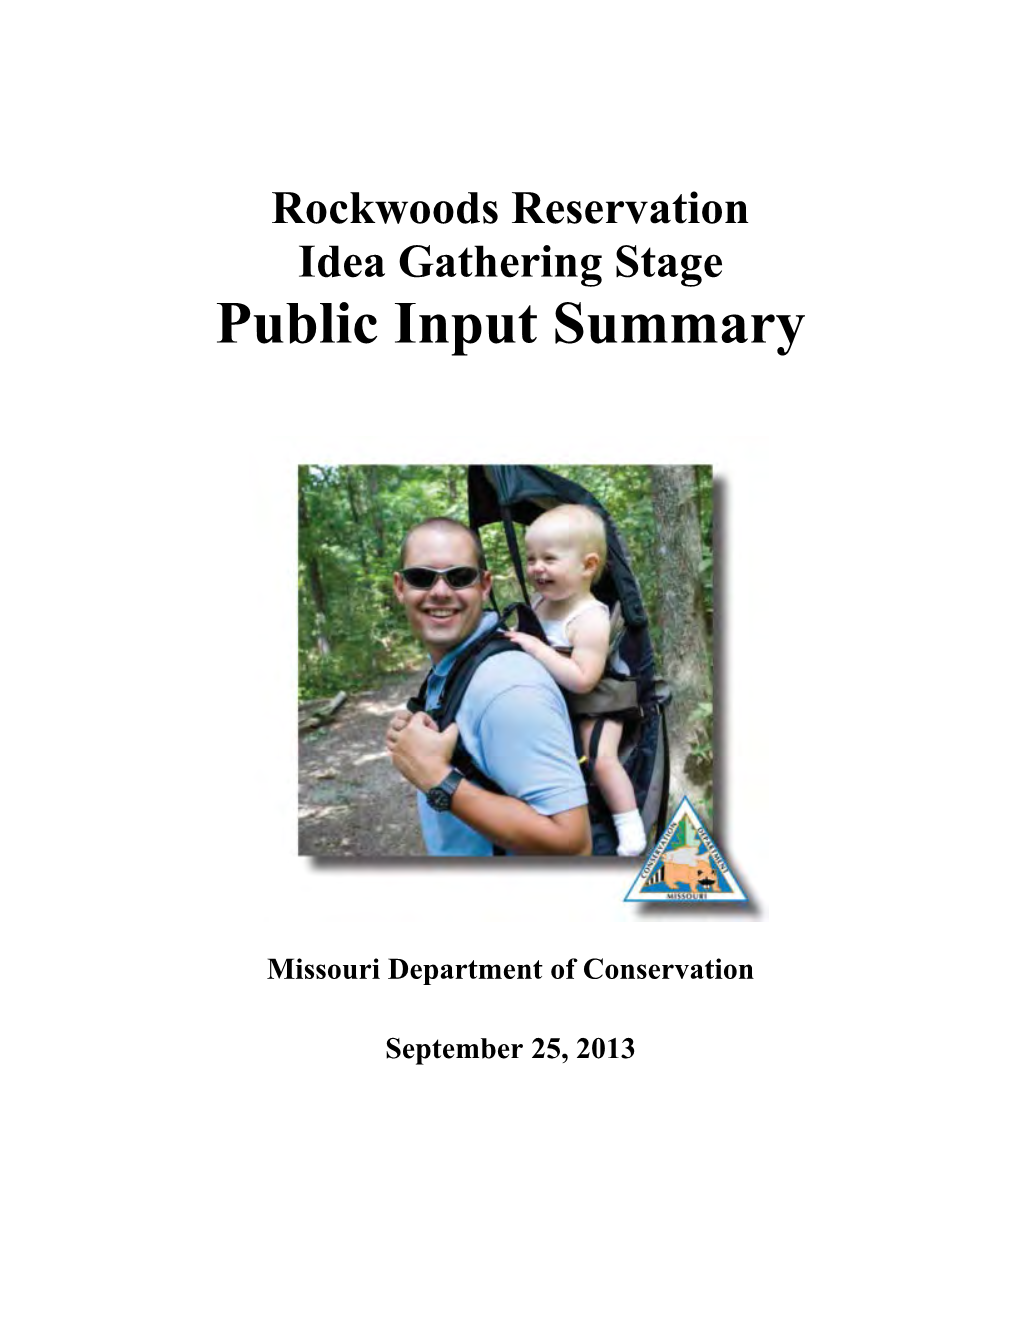 Rockwoods Reservation Idea Gathering Stage Public Input Summary